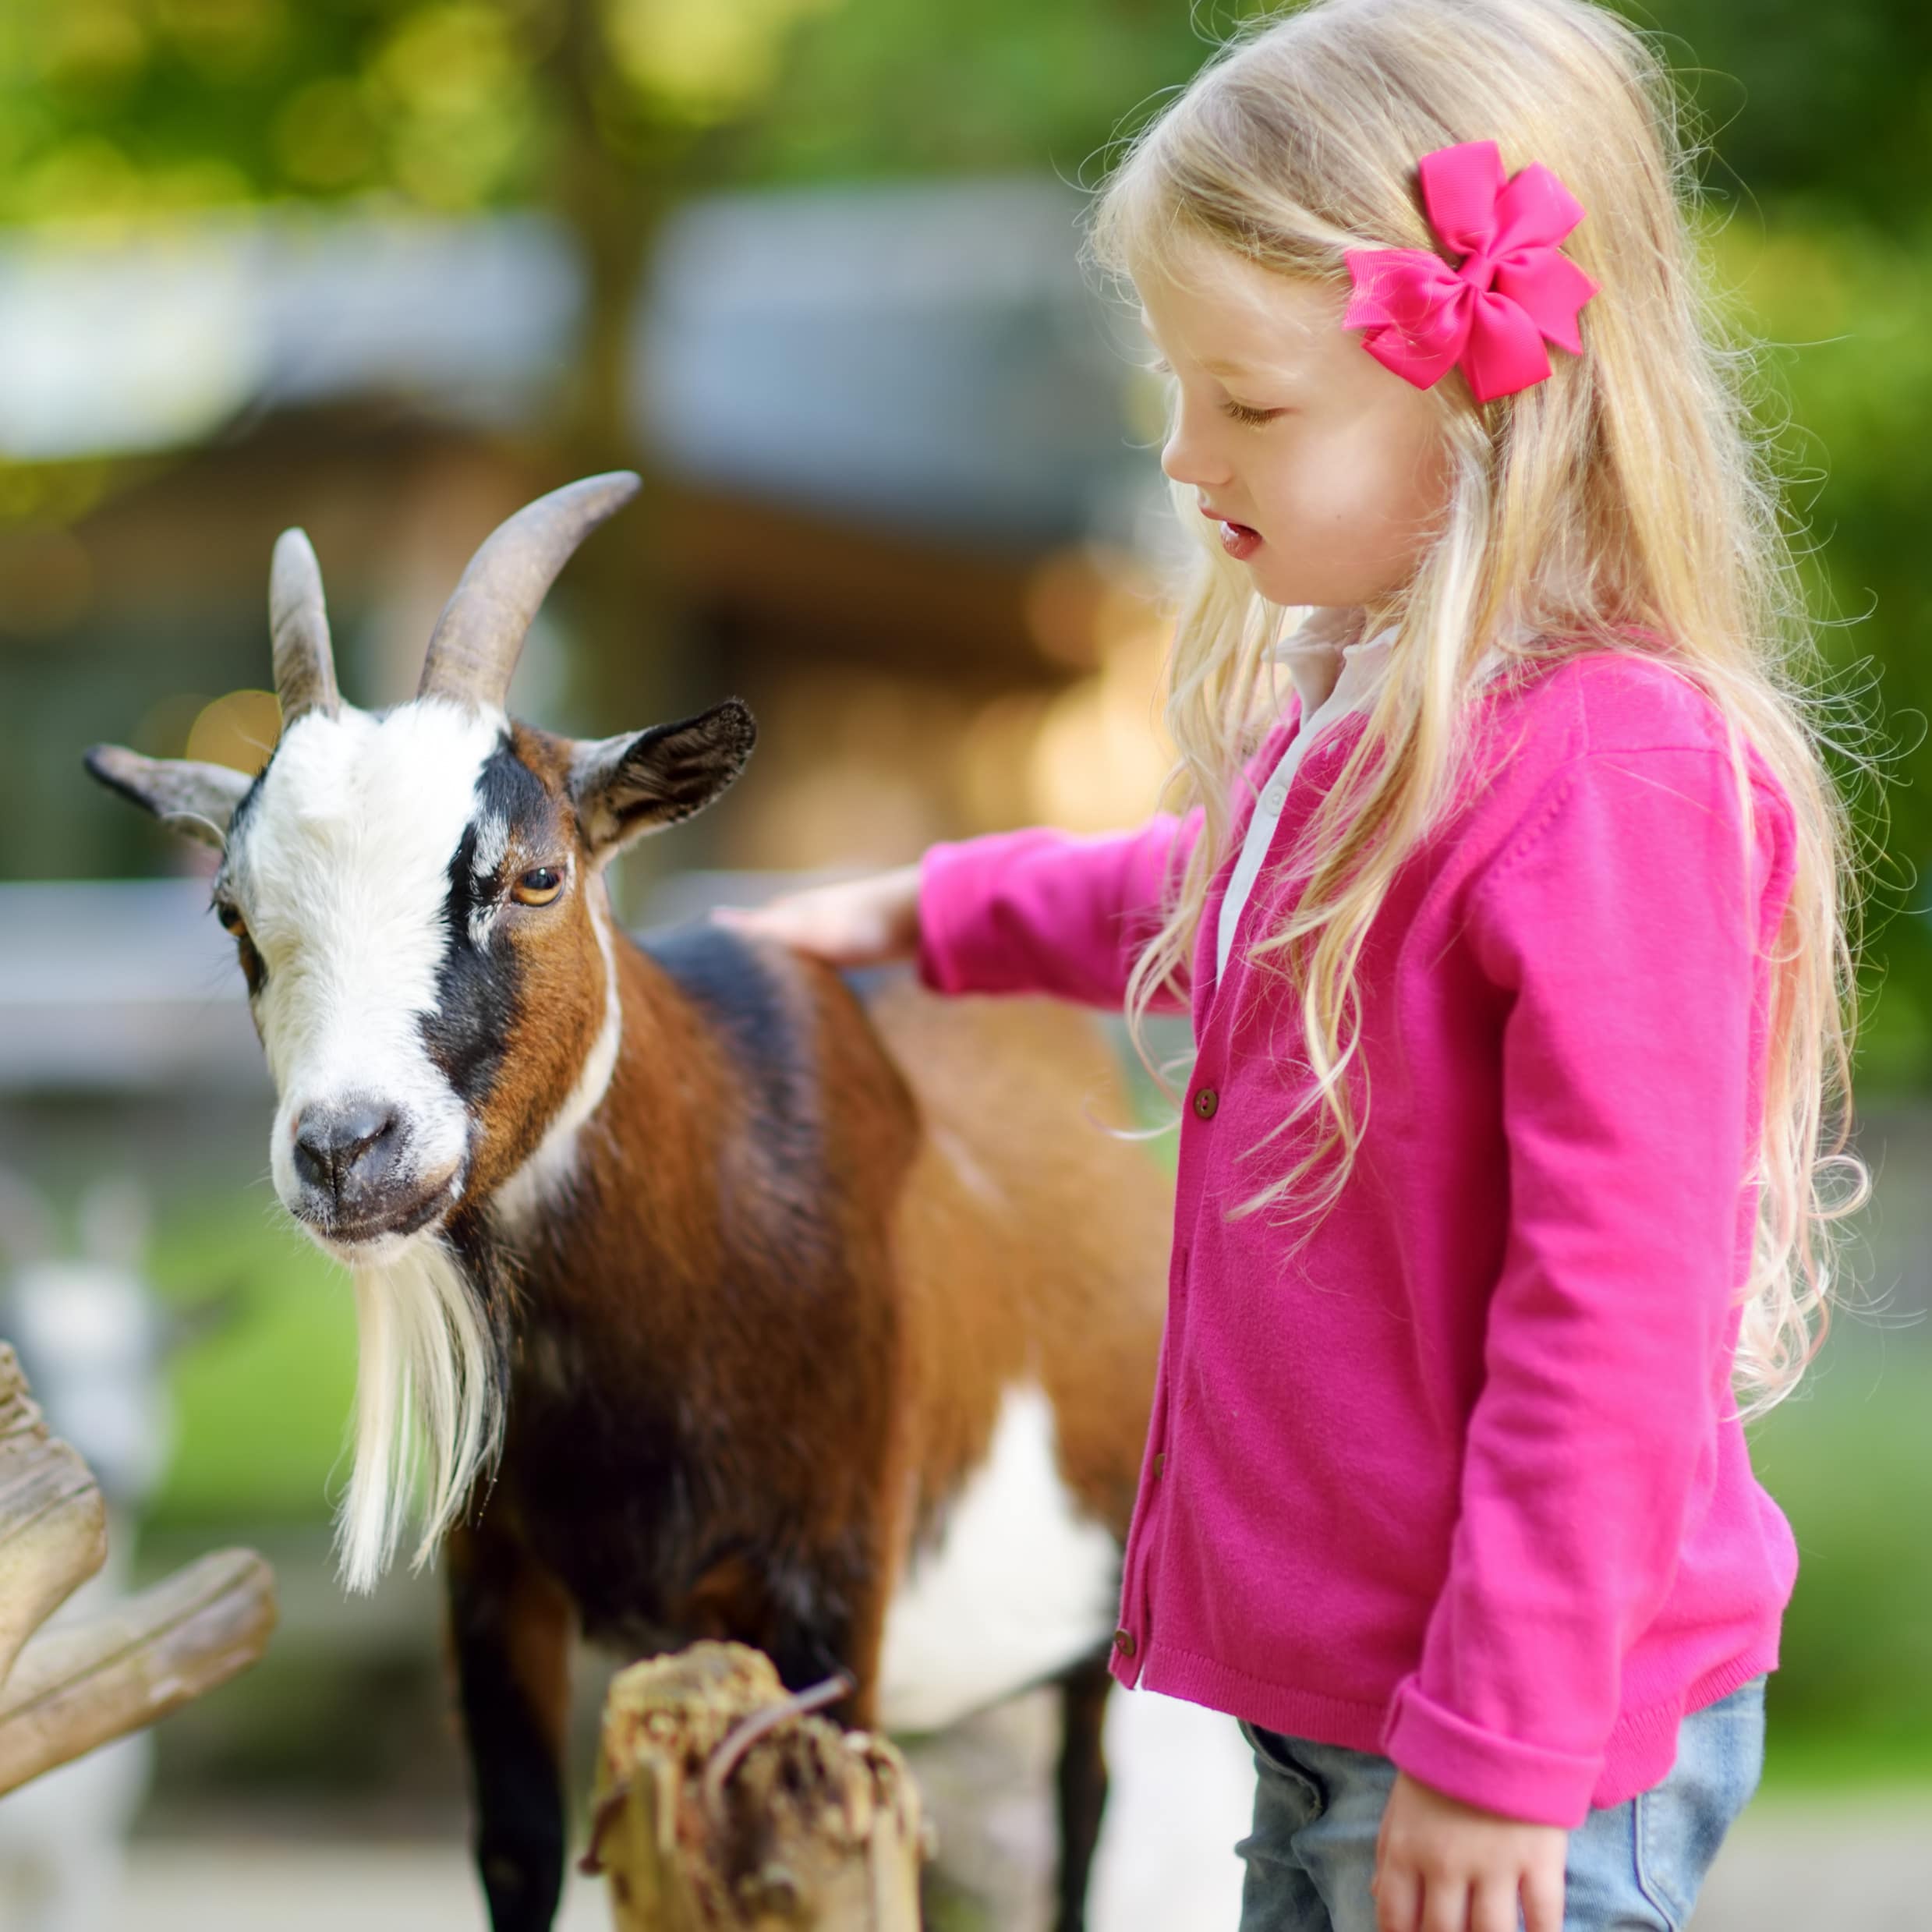 Ein blondes Mädchen mit pinker Haarschleife und pinkem Top streichelt eine Ziege.